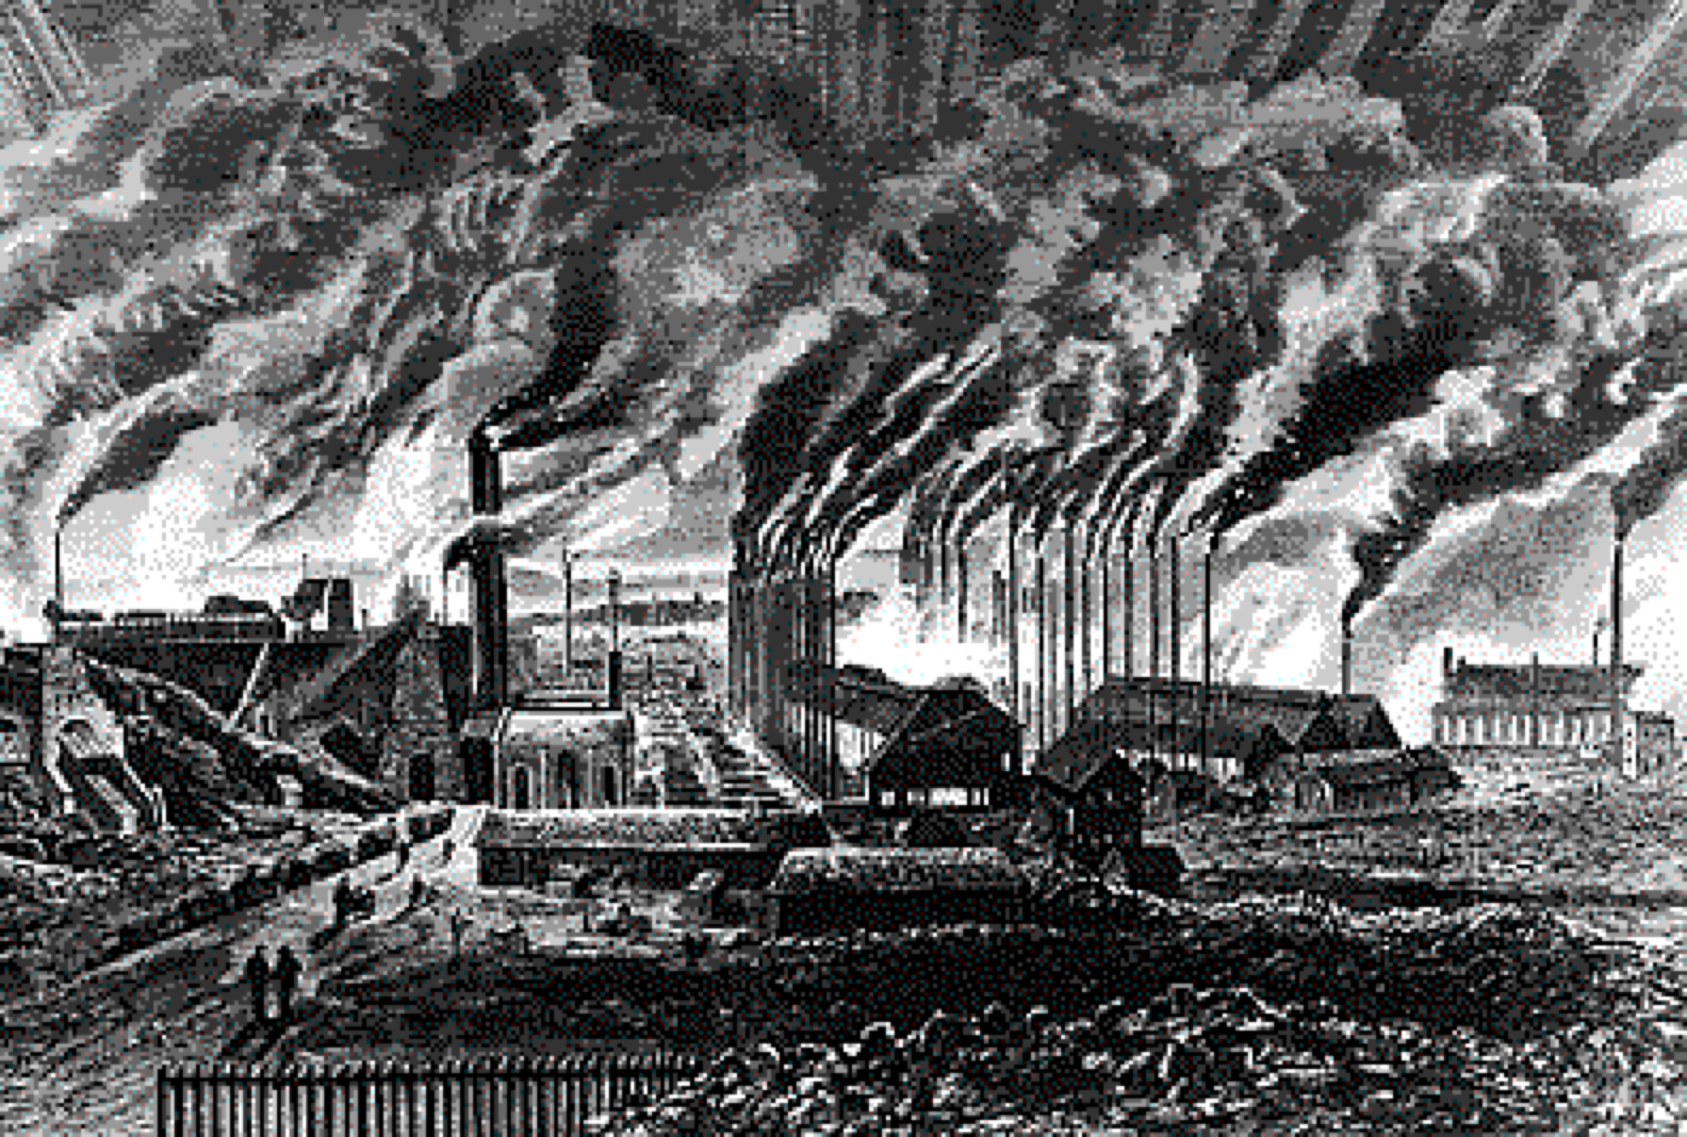 Industrial society. Промышленная революция 18.век Англия. Англия 18 век Индустриальная революция. Промышленная революция 19 века. Промышленная революция в Англии 19 век.